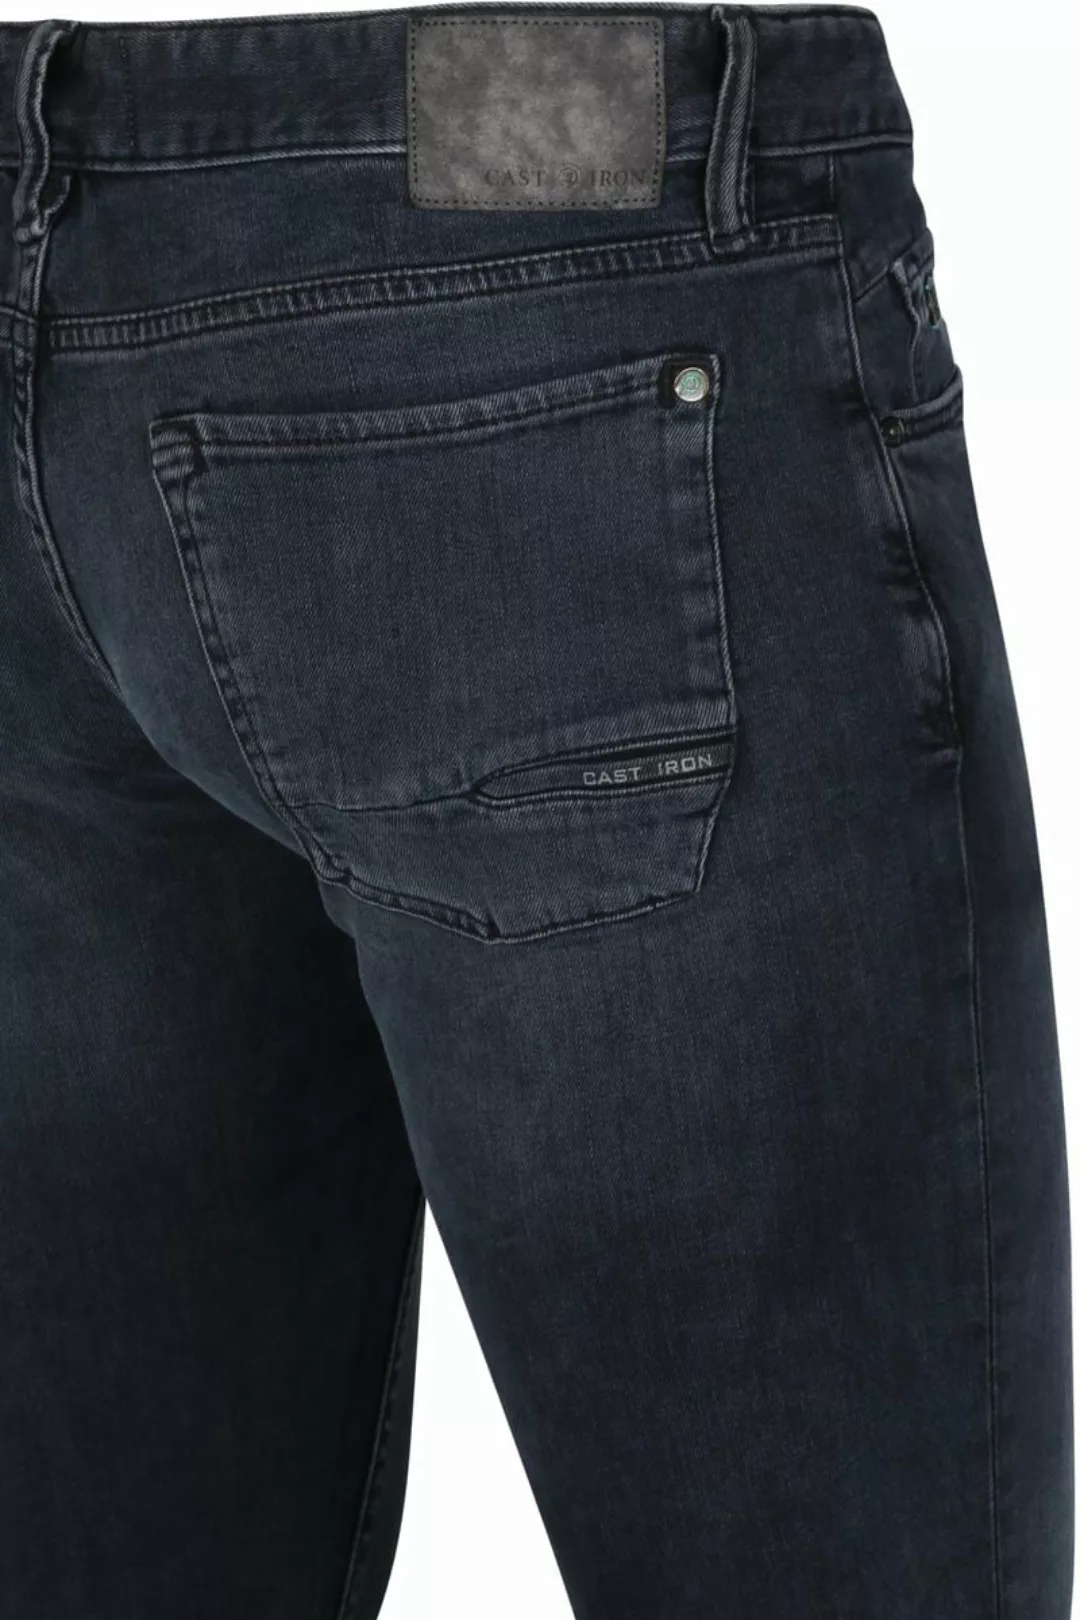 Cast Iron Riser Slim Jeans Vintage Washed Denim Schwarz - Größe W 34 - L 32 günstig online kaufen